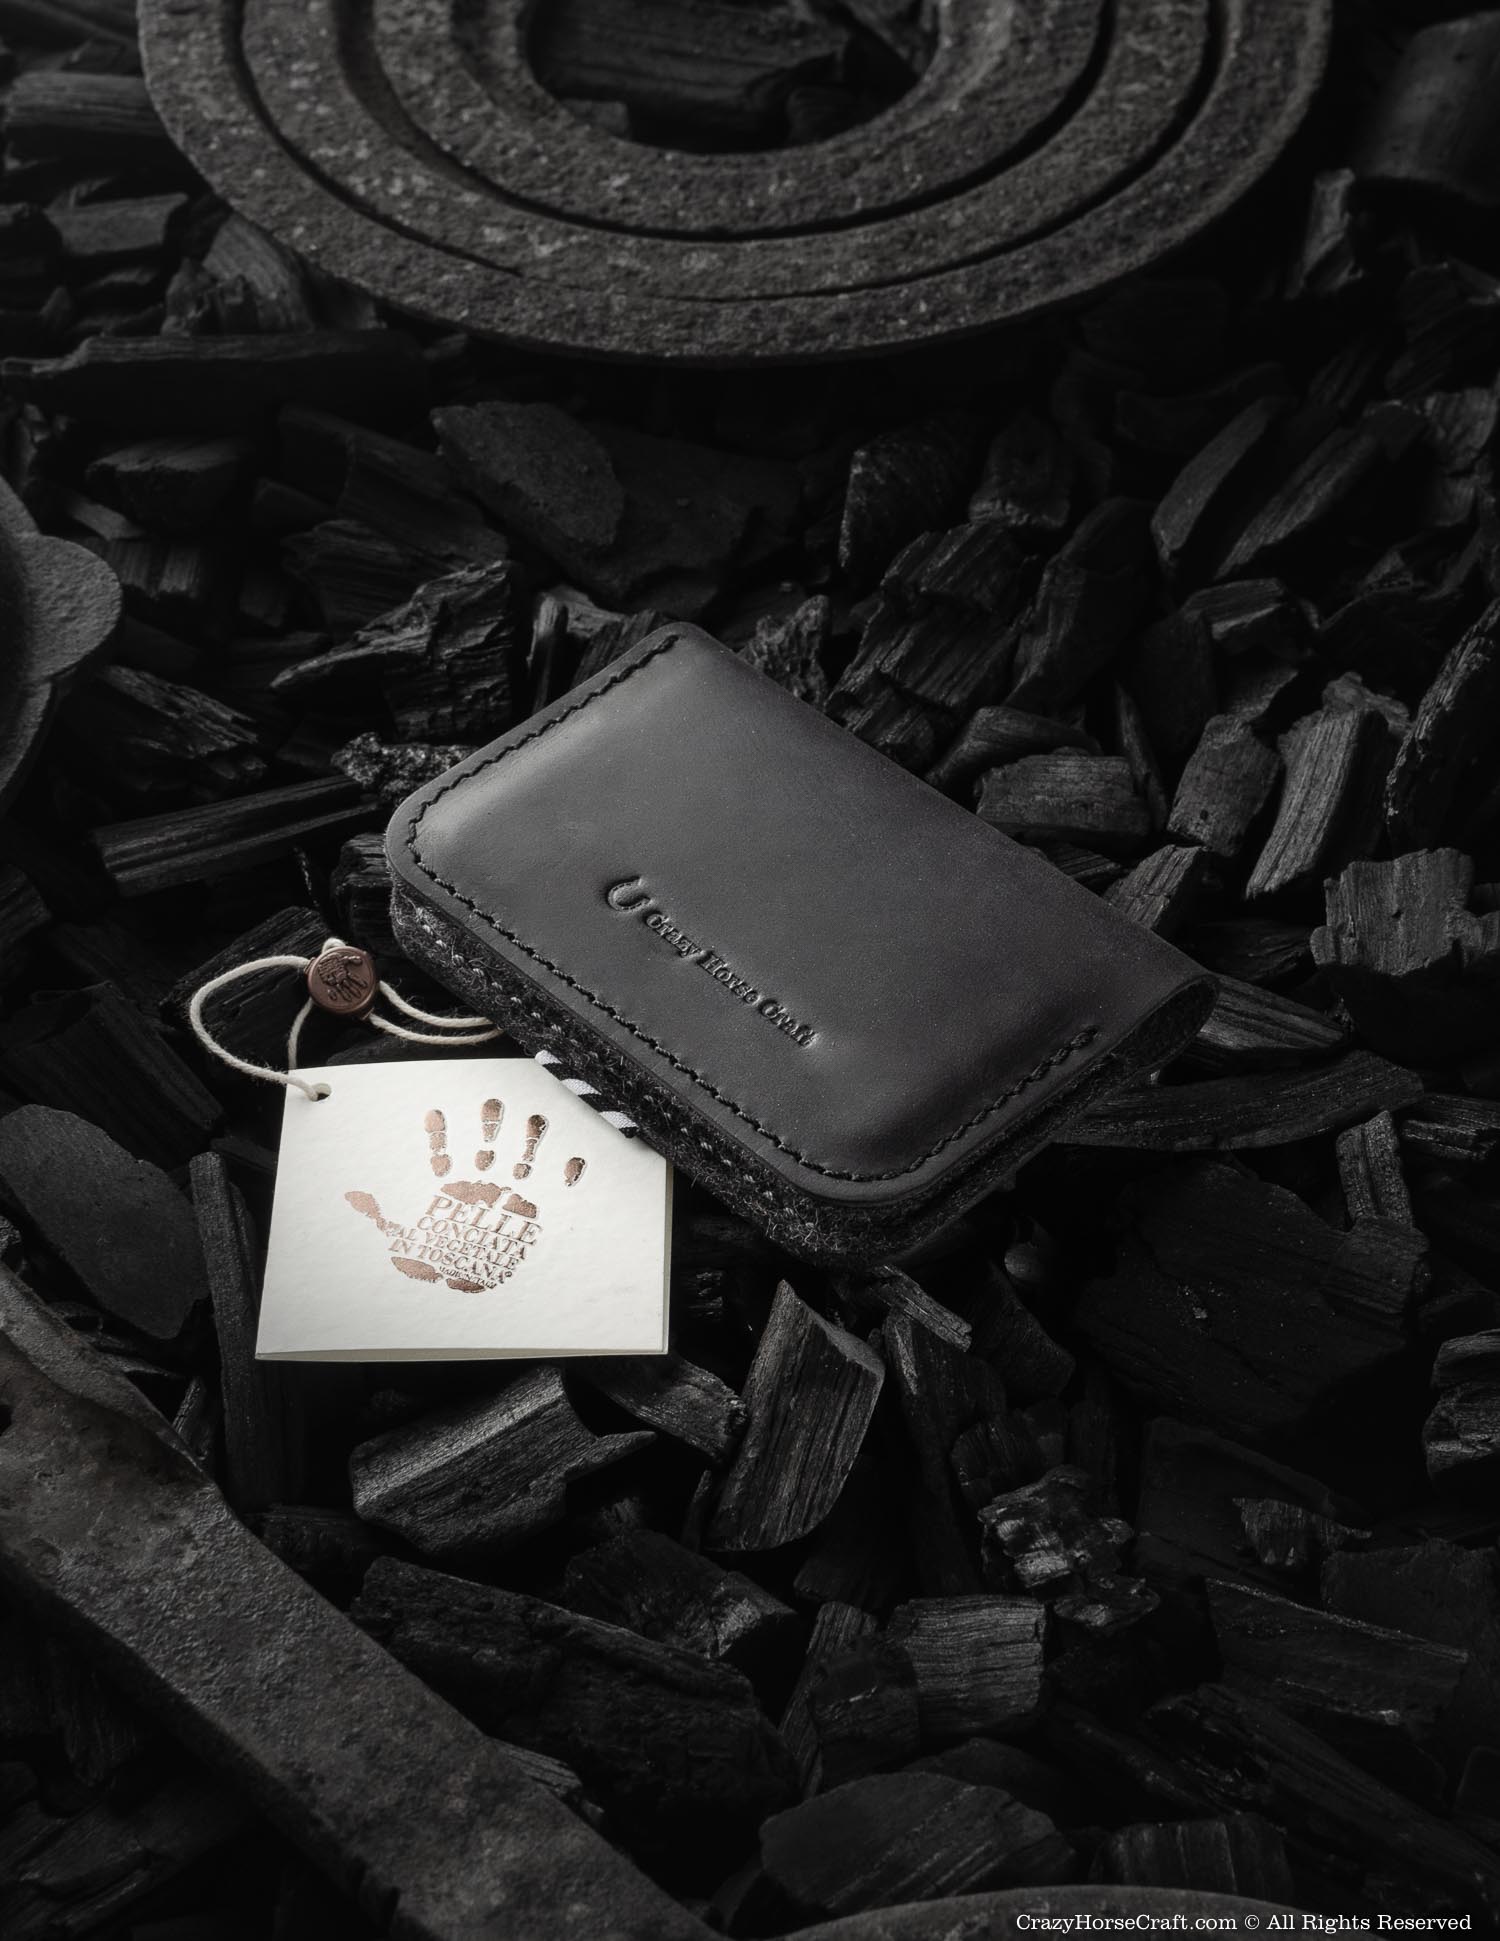 Black Leather Credit card holder